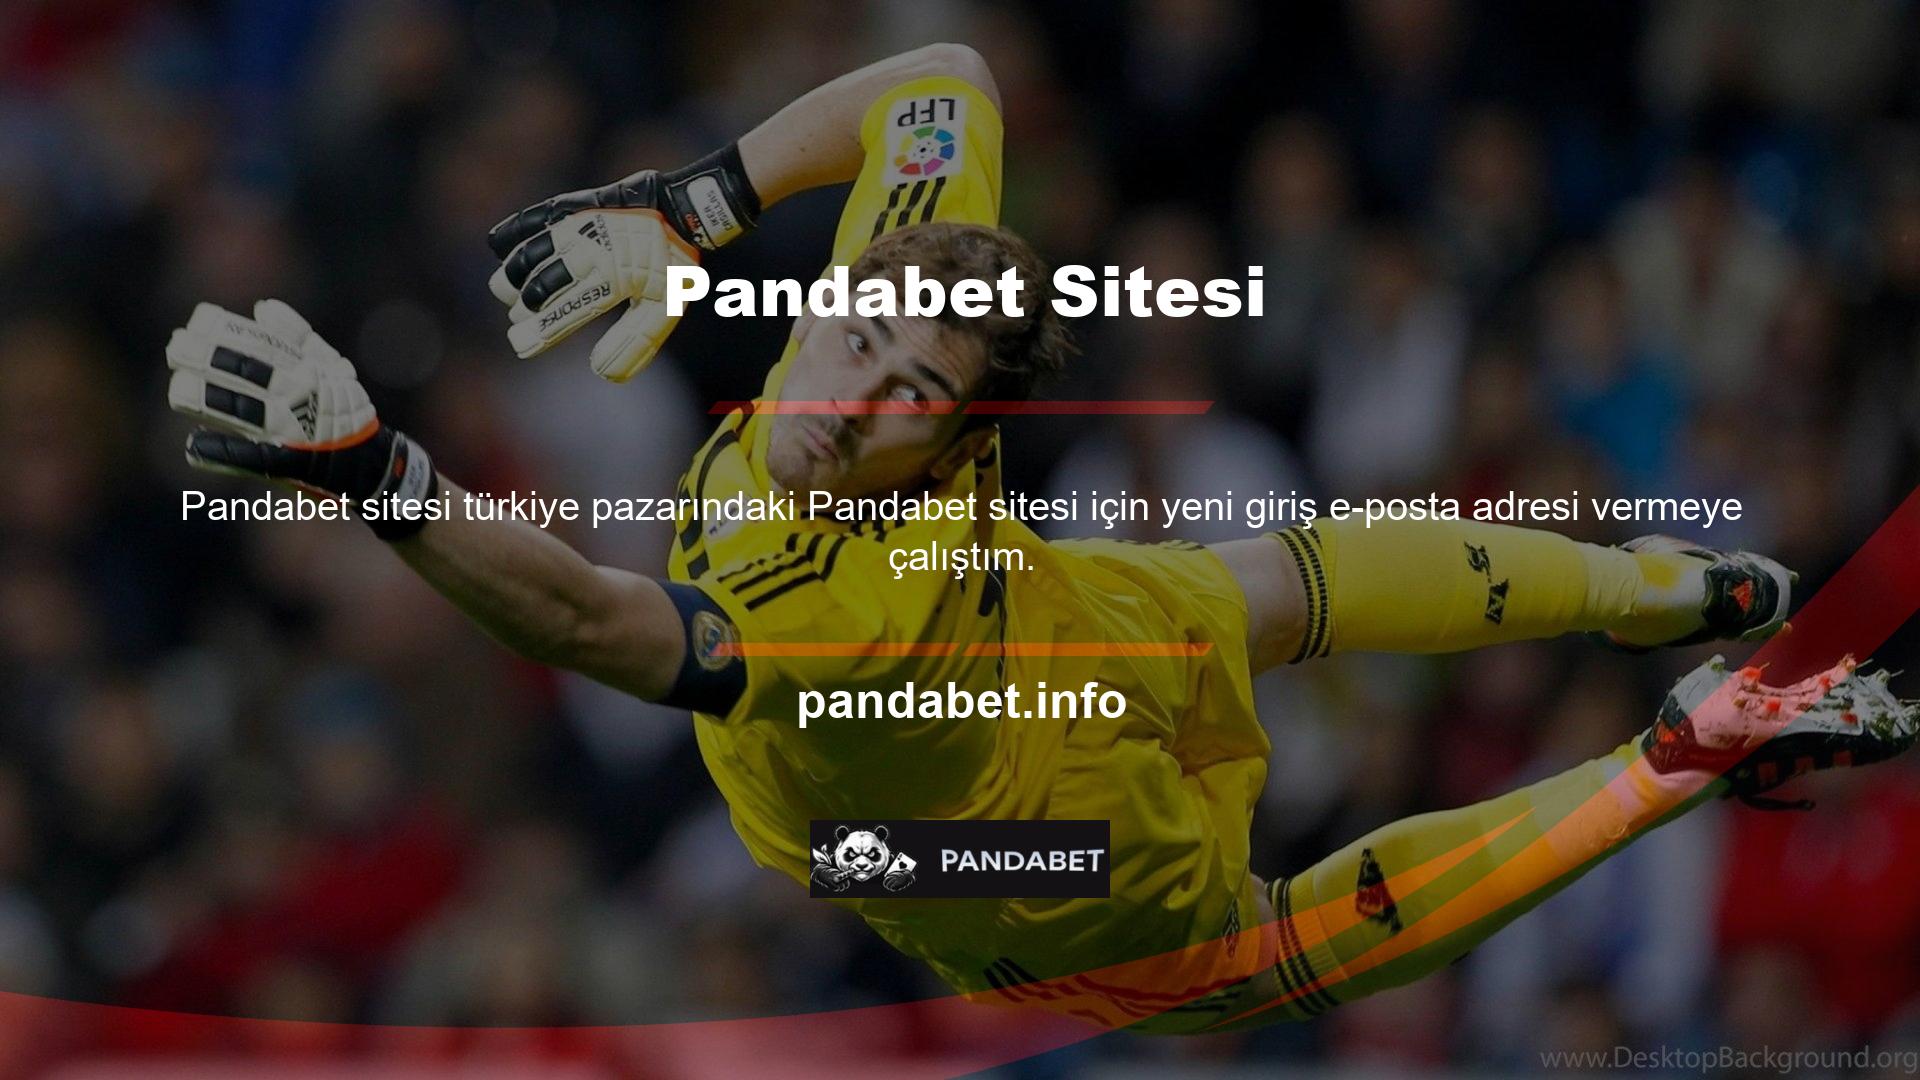 Pandabet, giriş bilgilerini olarak güncelledi ve artık erişilebilir durumda